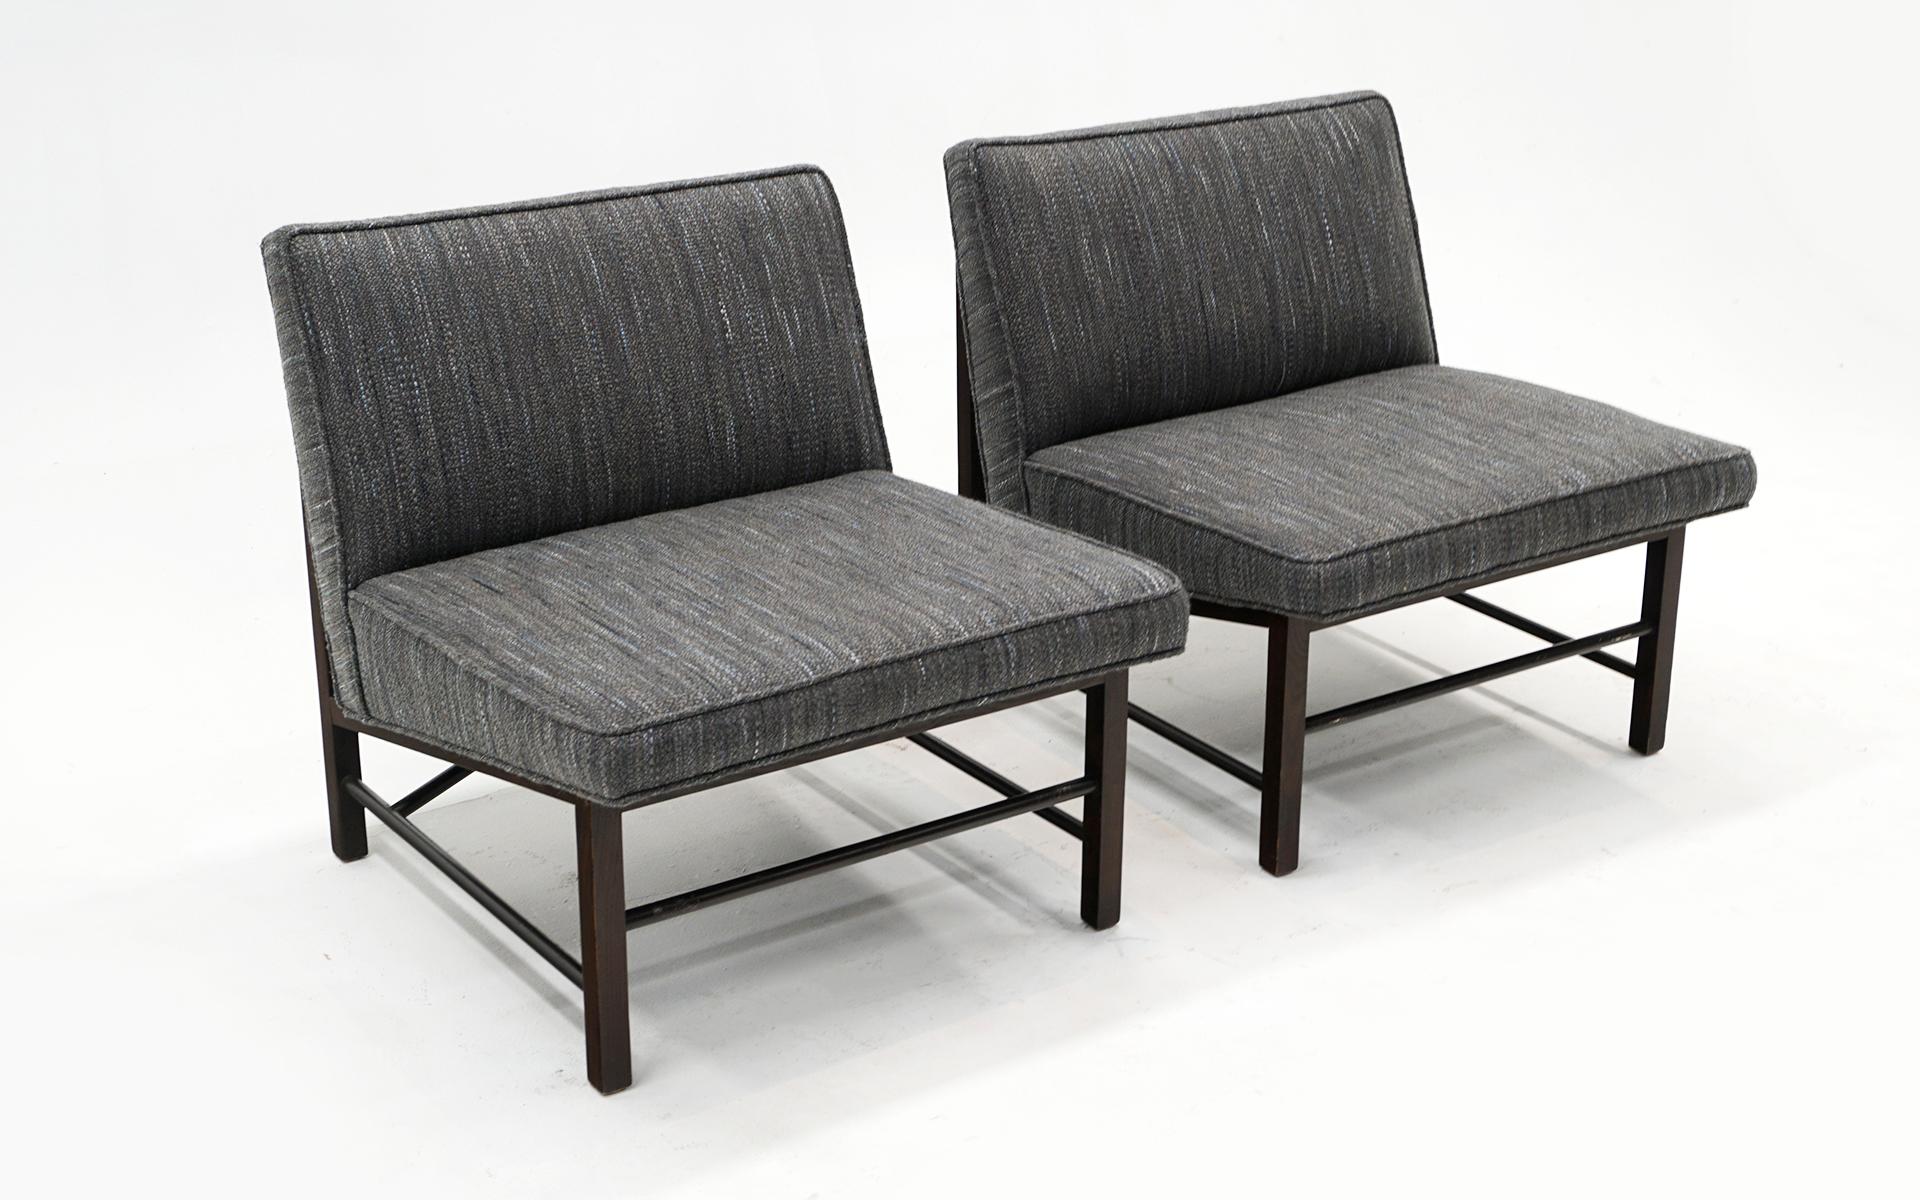 Satz von zwei armlosen Slipper Chairs / Lounge Chairs, entworfen von Edward Wormley für Dunbar, 1950er Jahre.  Die mittelgrau. Polsterung wurde vor kurzem aktualisiert und in gutem Zustand ohne Probleme.  Die Mahagoni-Rahmen, -Beine und -Kreuzträger